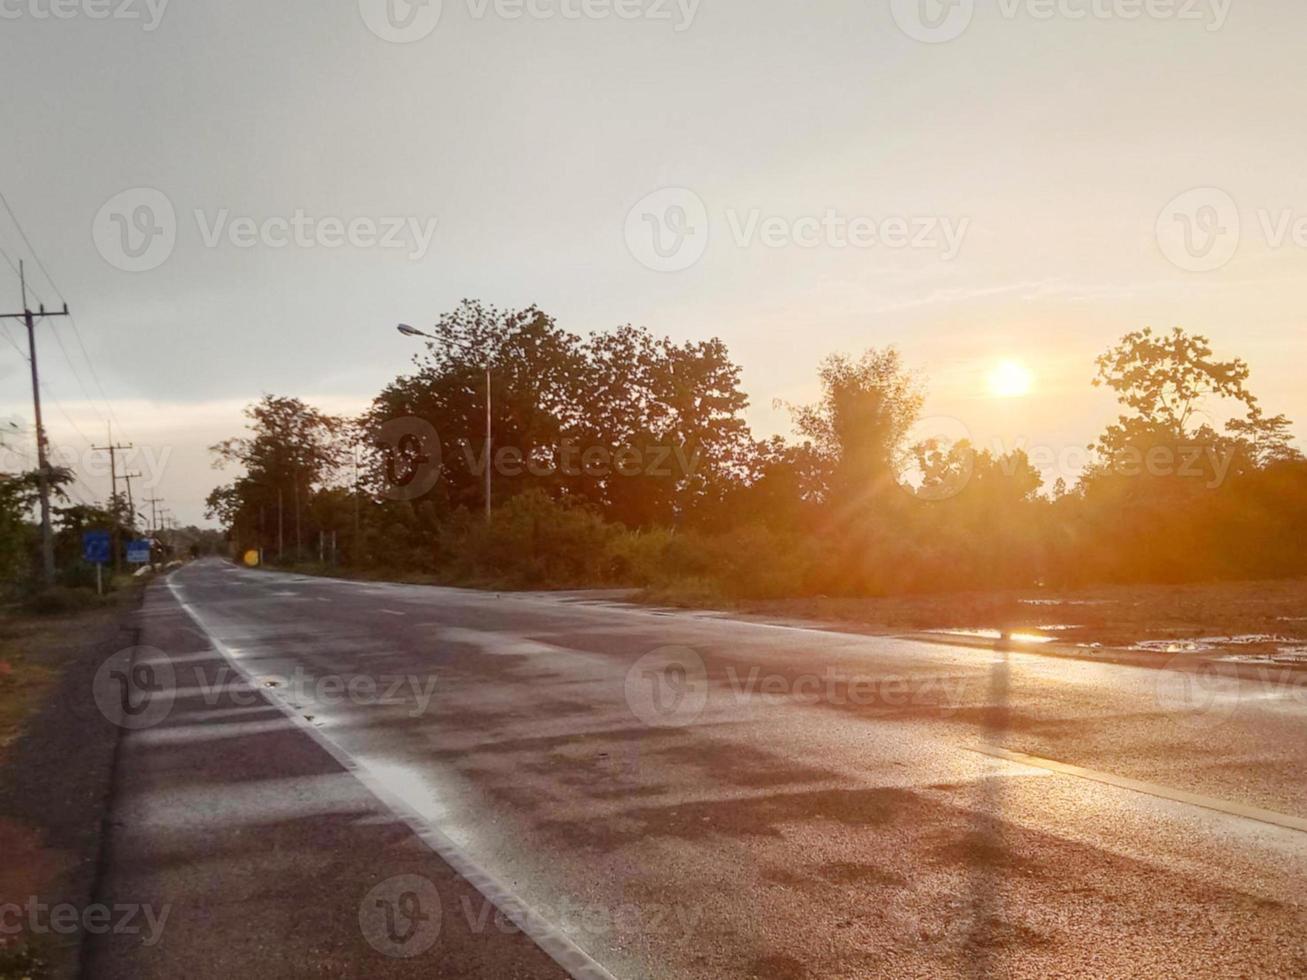 carretera asfaltada mojada con lluvia al lado de la carretera al lado del arbusto, la silueta de la puesta de sol brilla en color naranja brillante foto